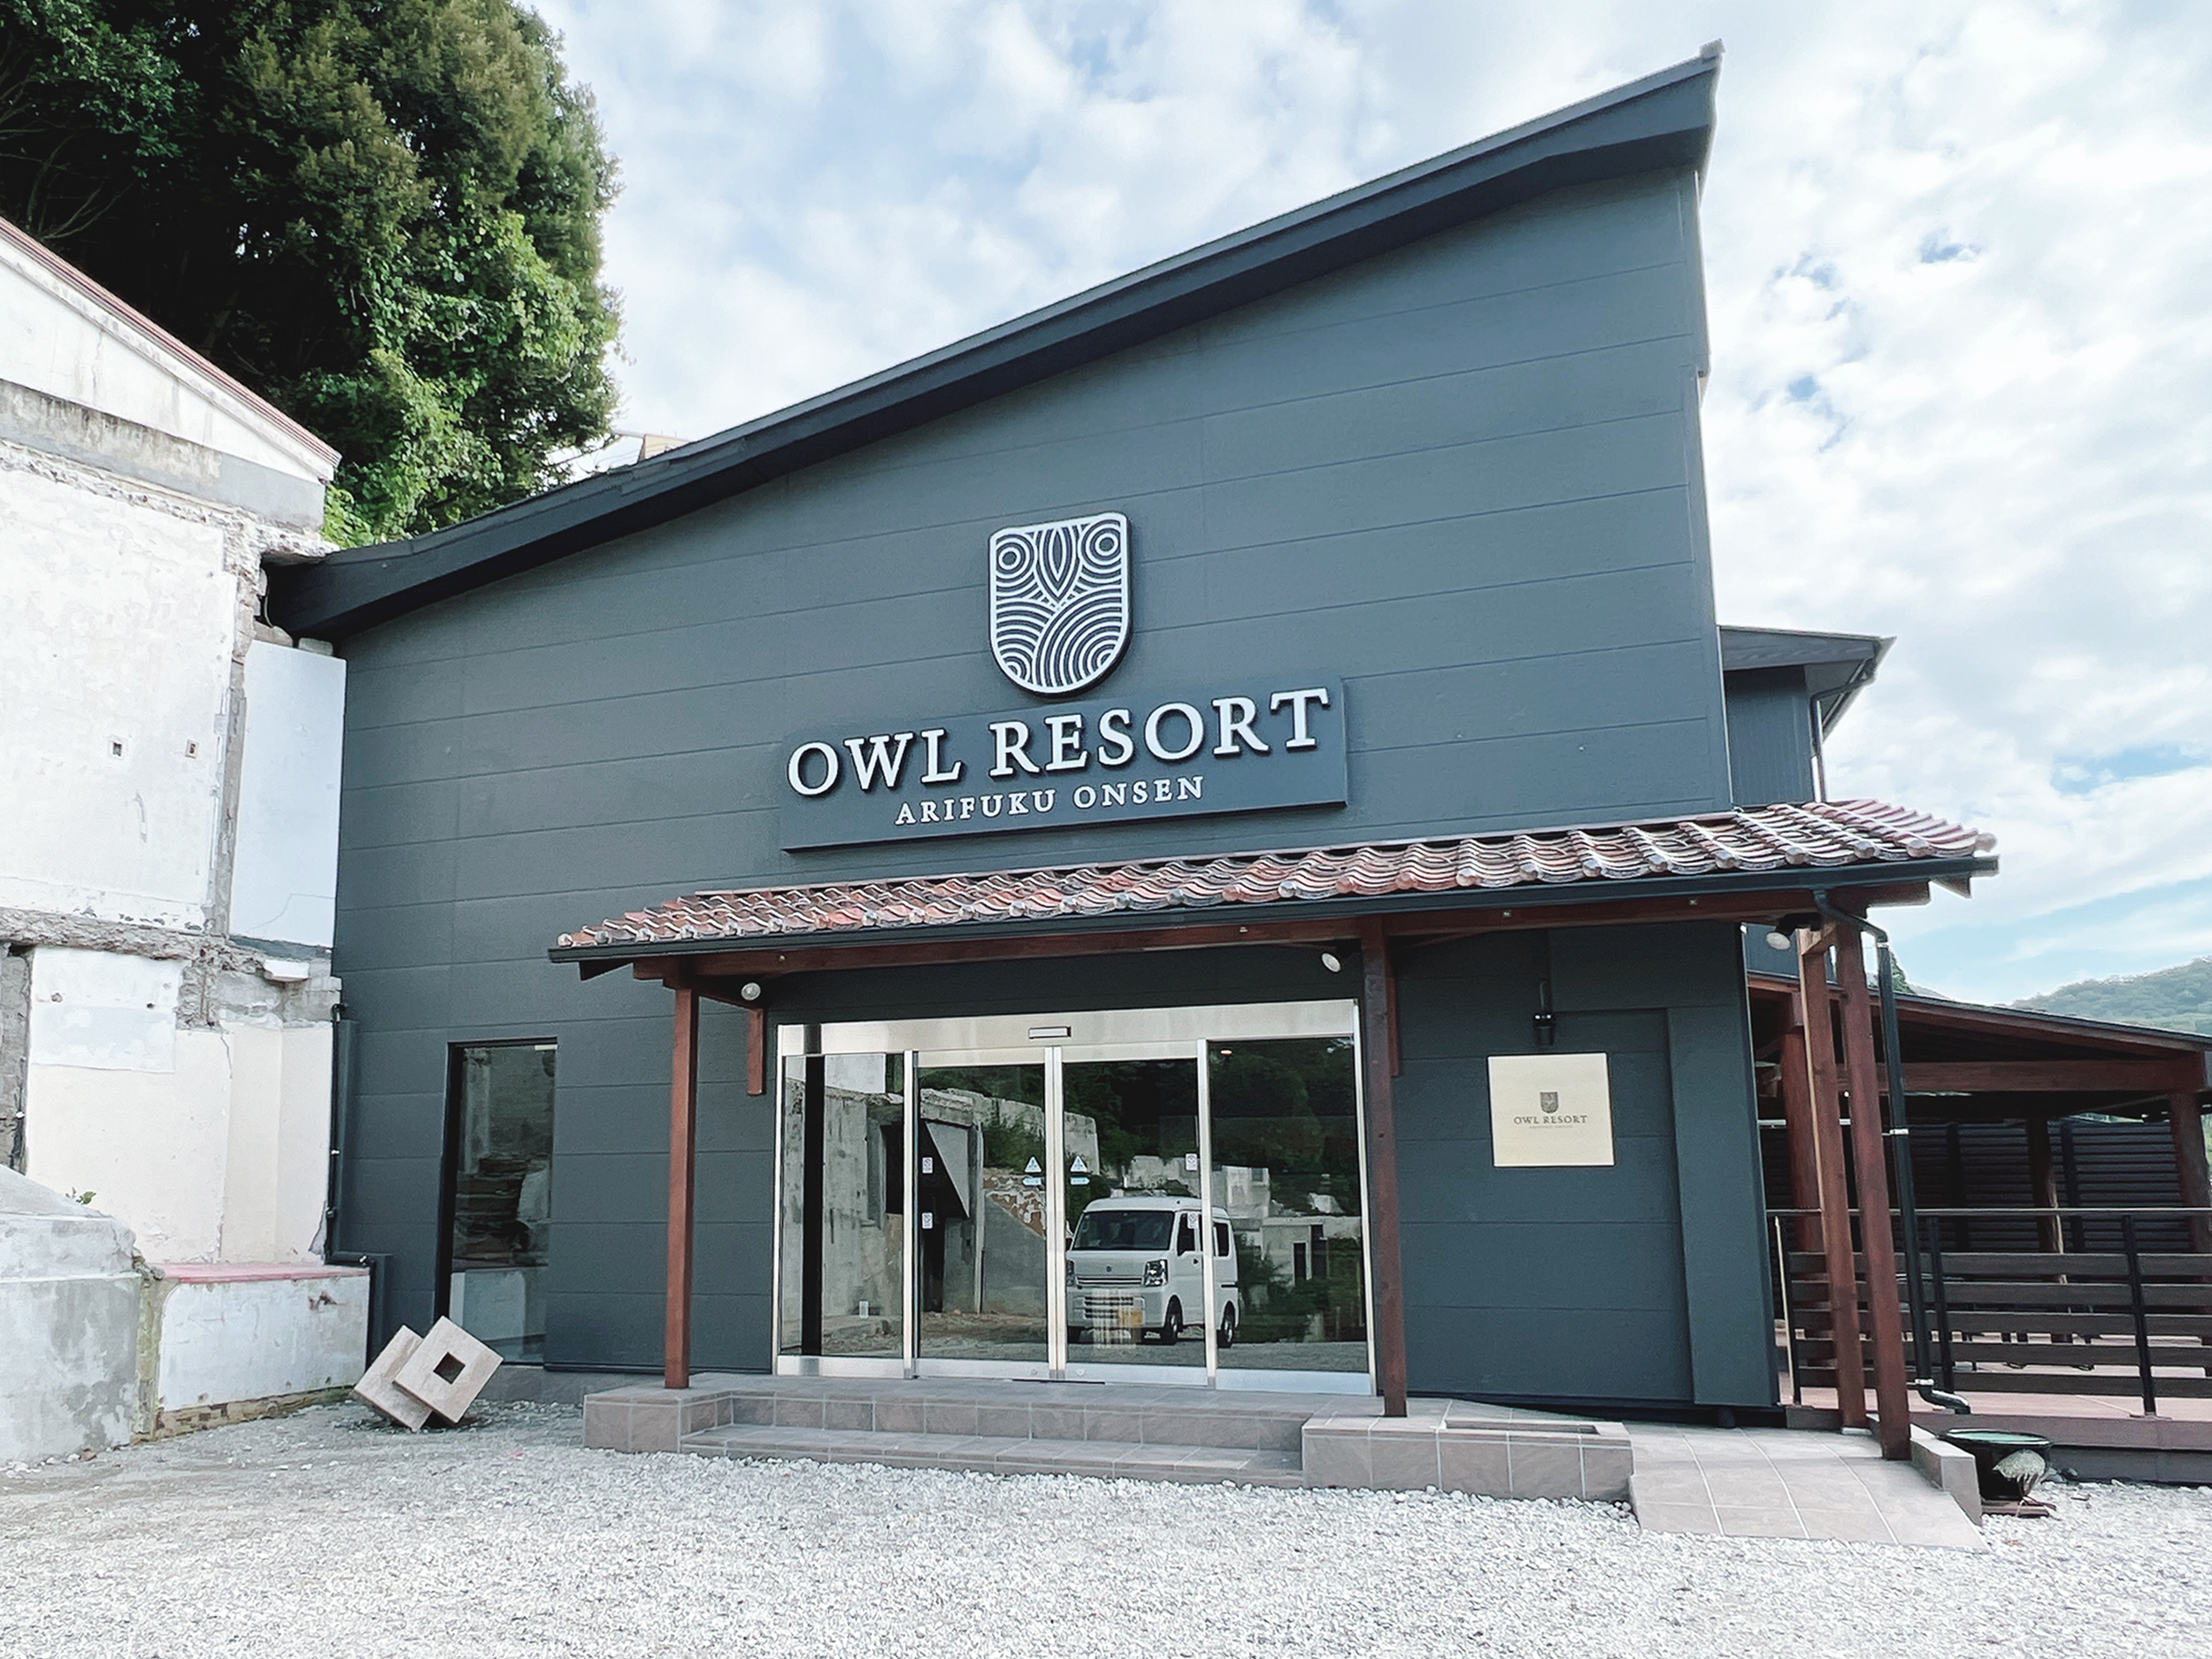 Owl Resort Arifuku Onsen